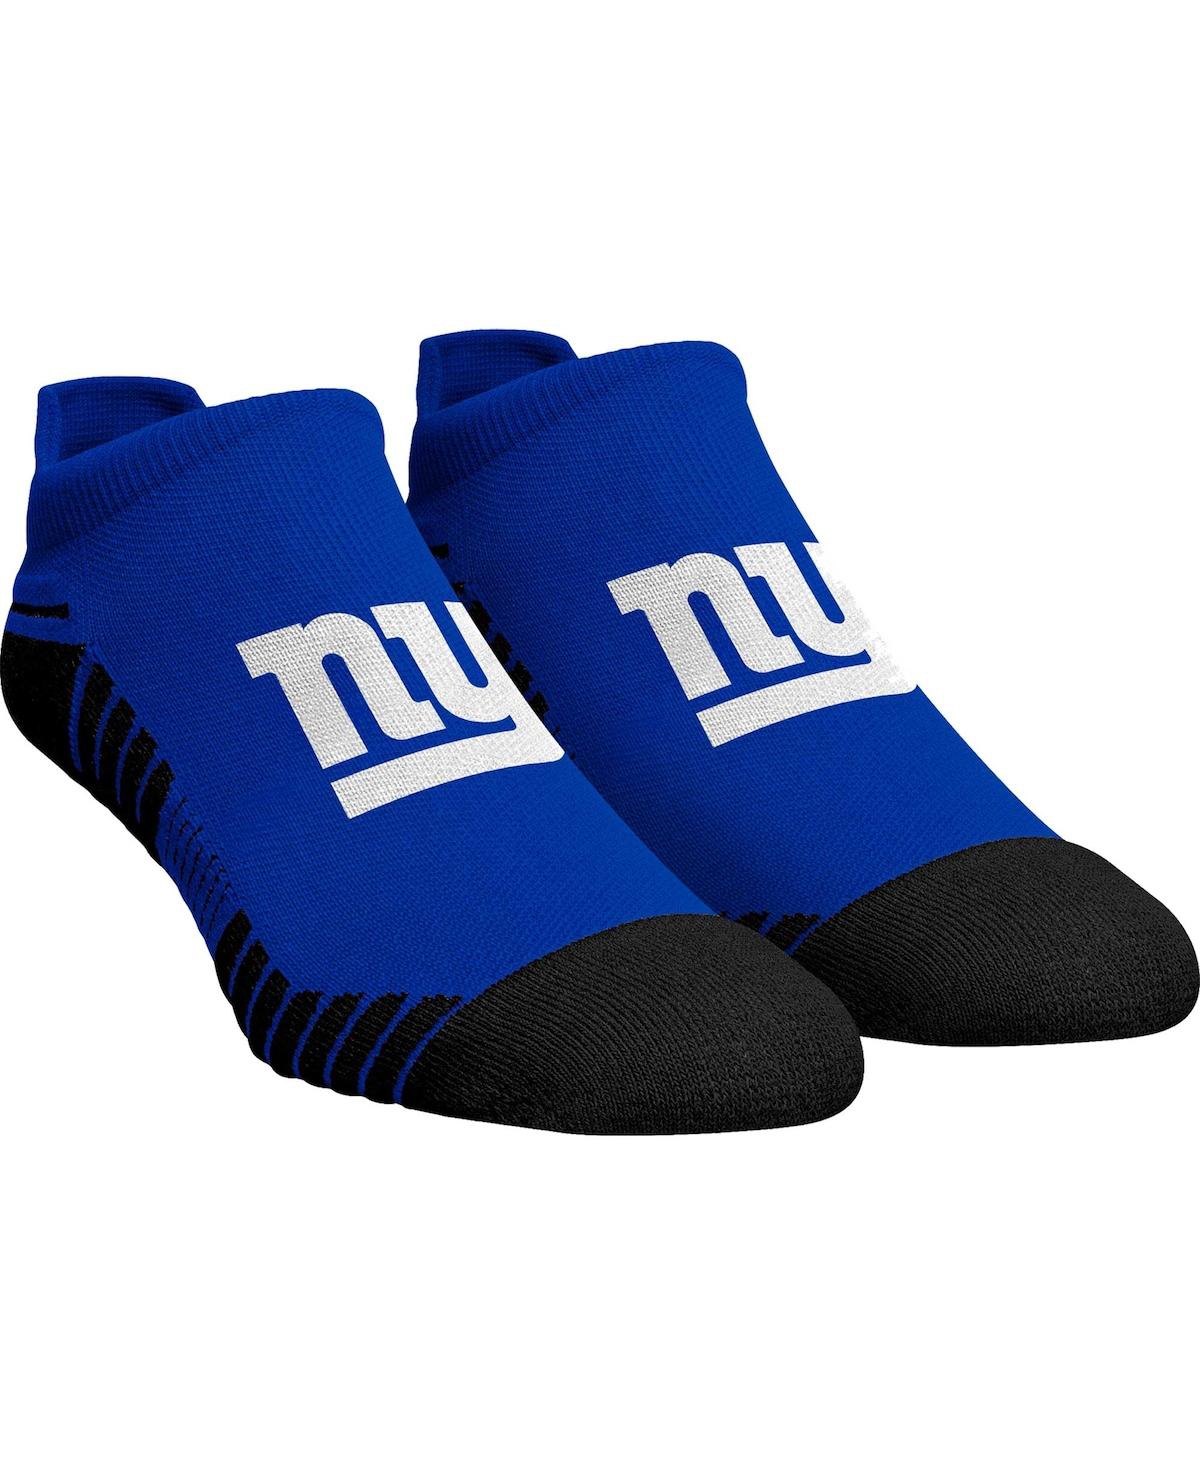 Men's and Women's Rock 'Em Socks New York Giants Hex Ankle Socks - Royal